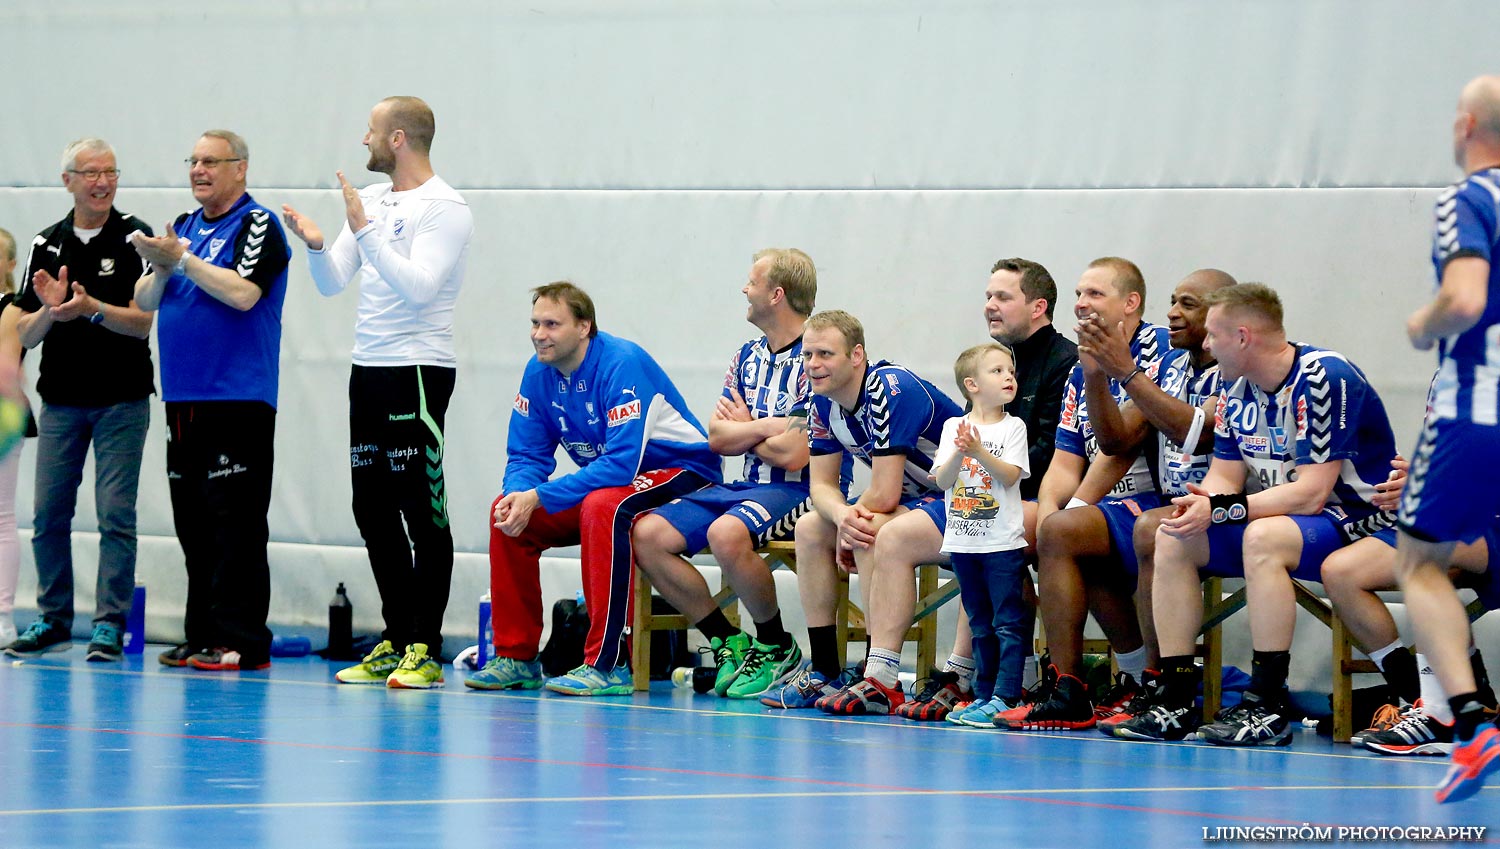 Trim-SM Herrar Bronsmatch Västra Frölunda IF-IFK Skövde HK 11-20,herr,Arena Skövde,Skövde,Sverige,Handboll,,2015,117031